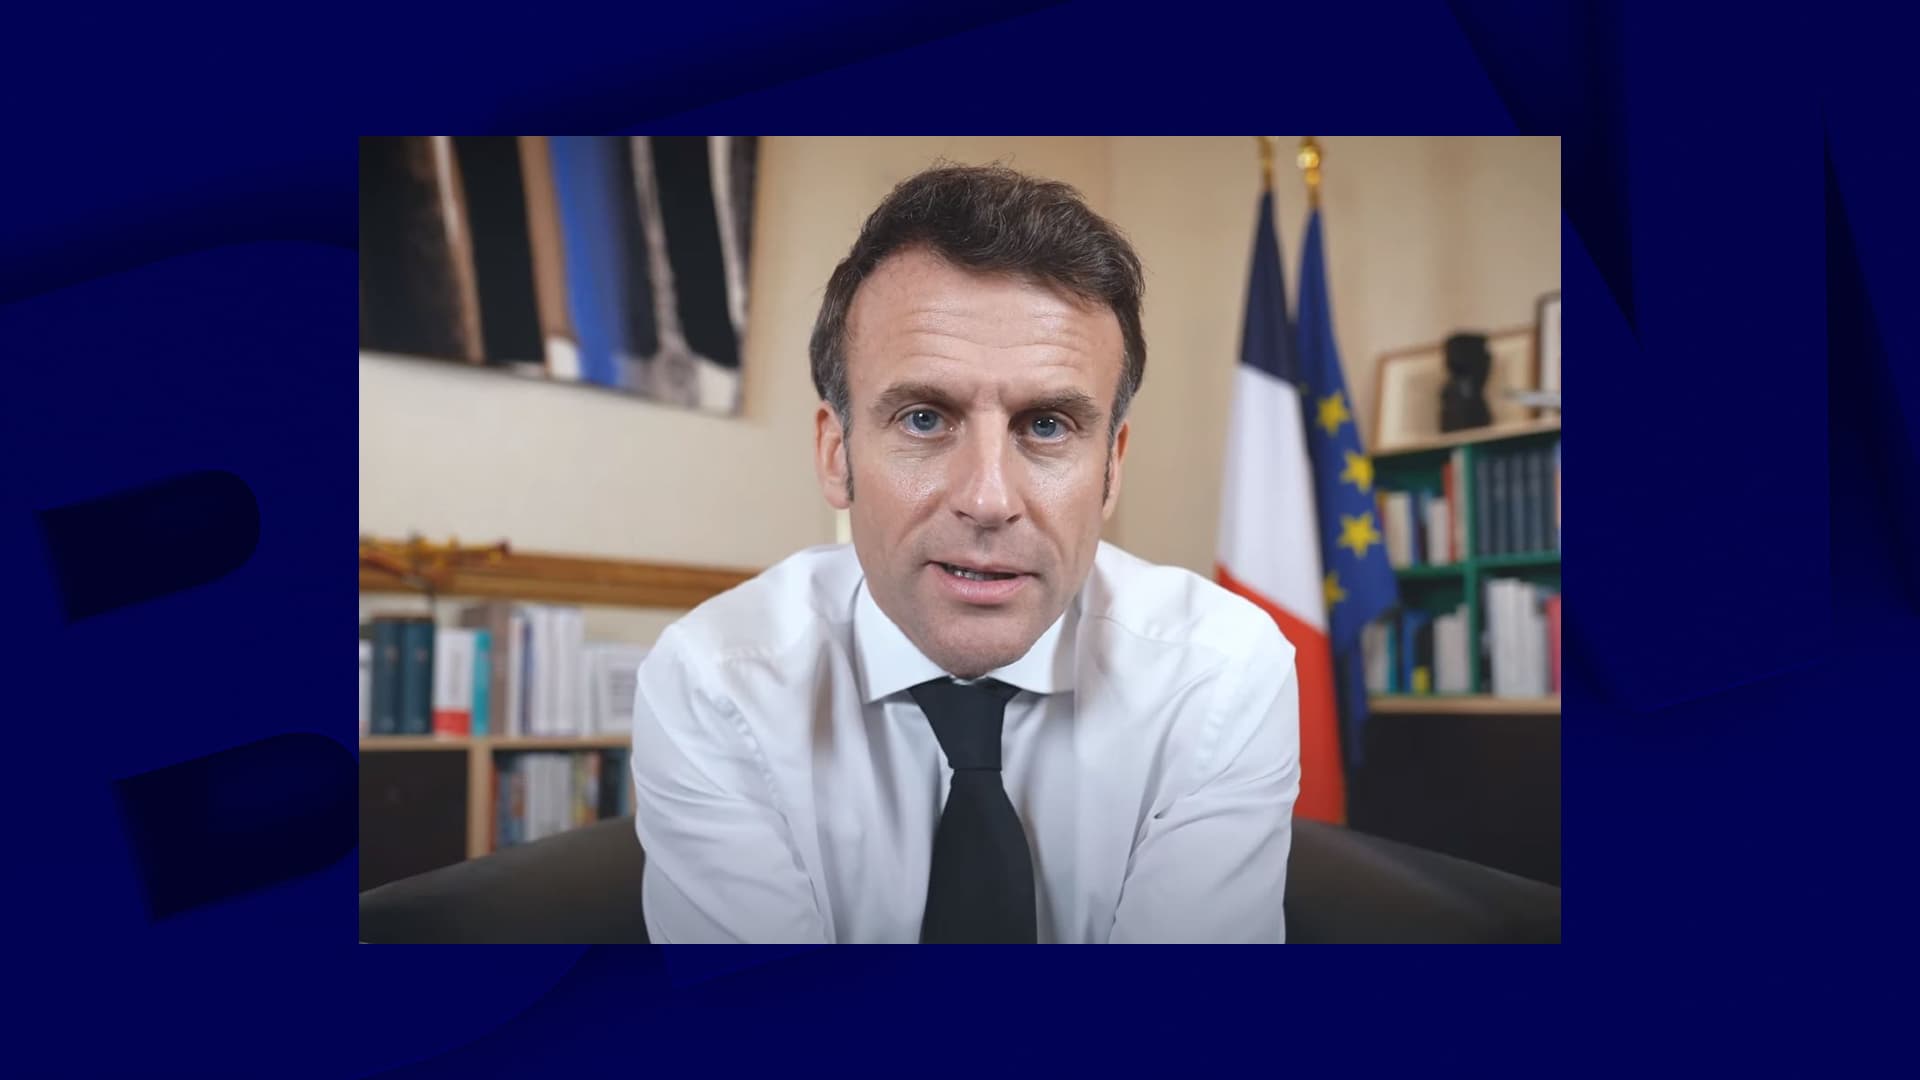 Macron beweert dat hij tijdens zijn beloften “verkeerd begrepen” werd